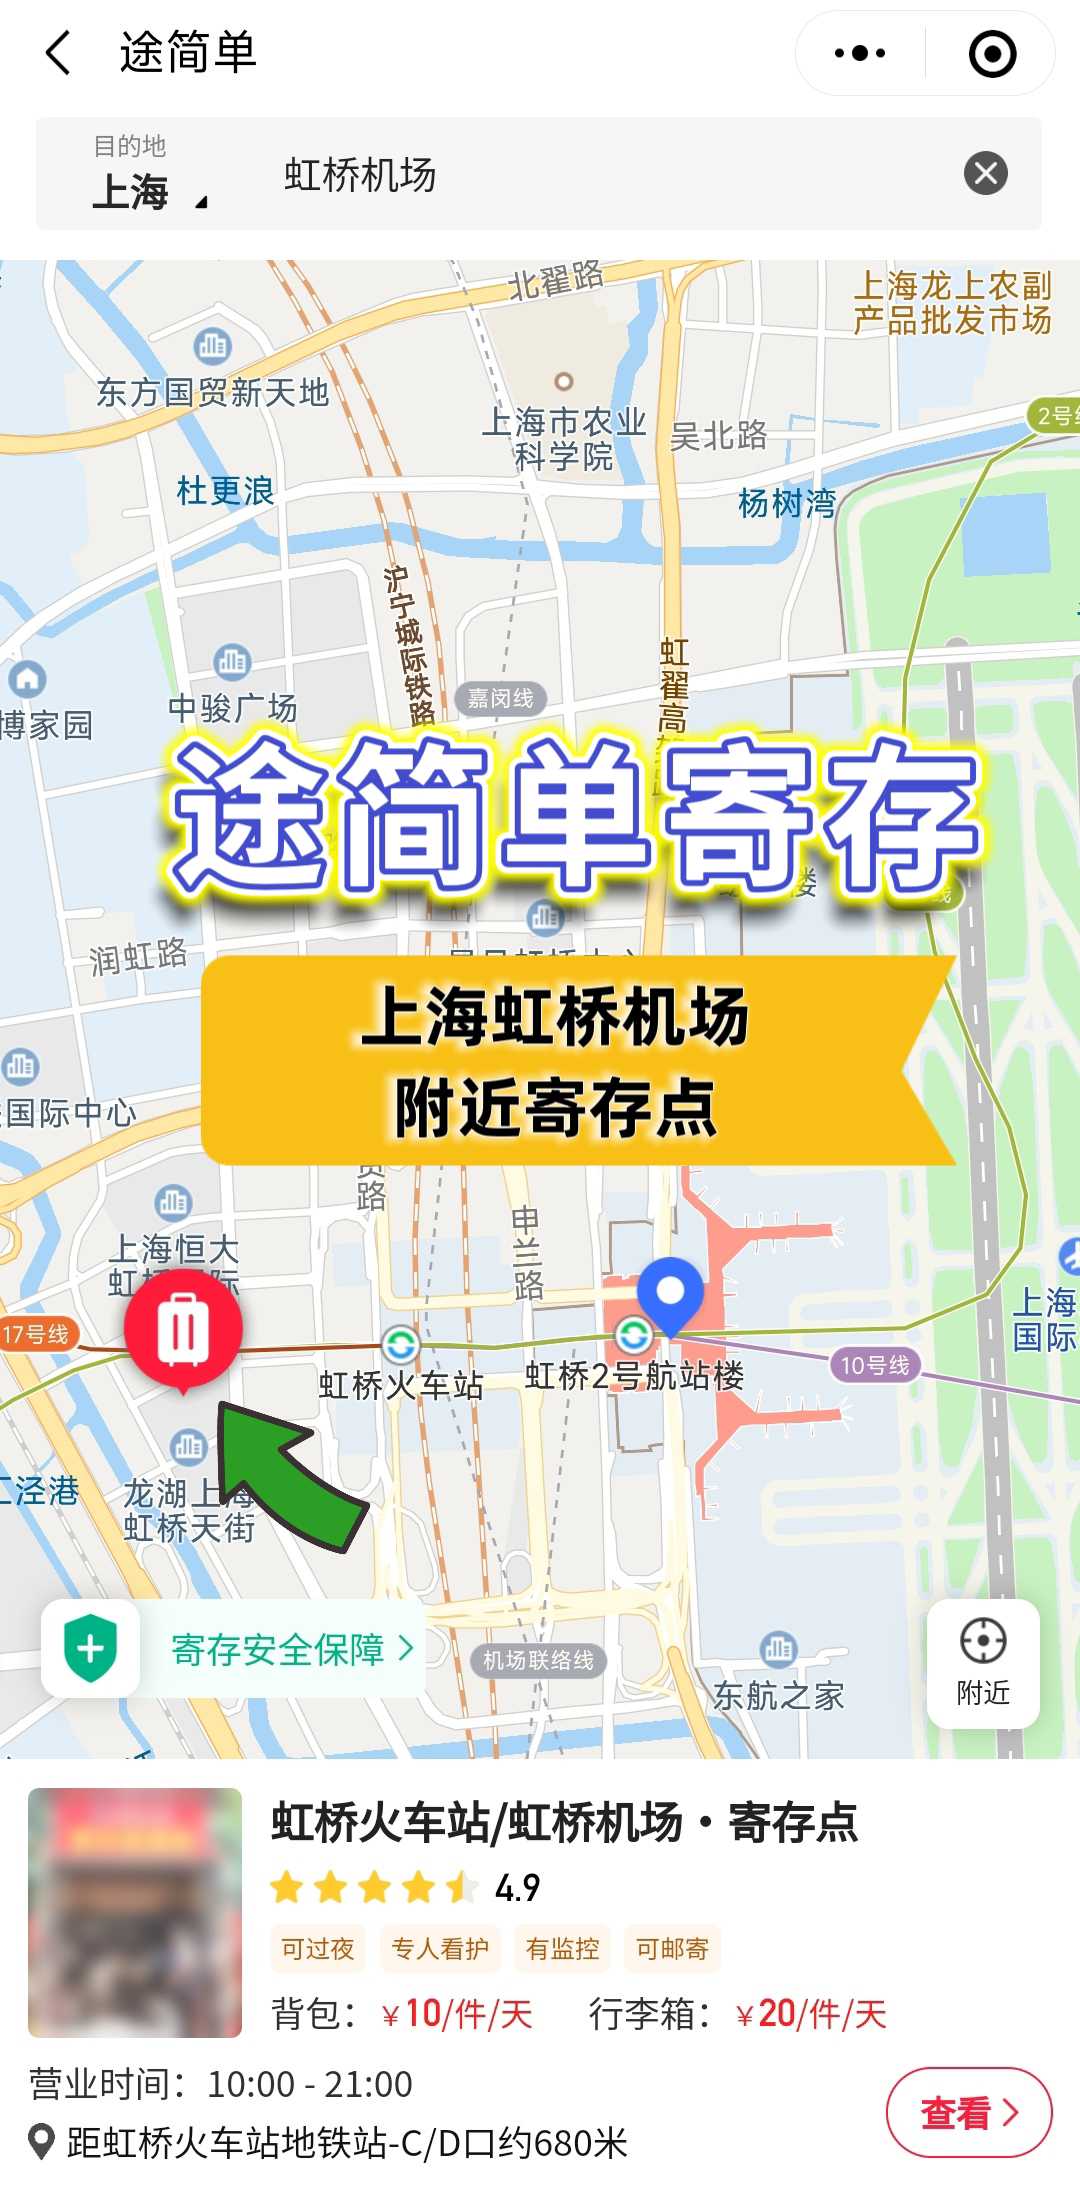 上海虹桥机场丨行李寄存10～20元